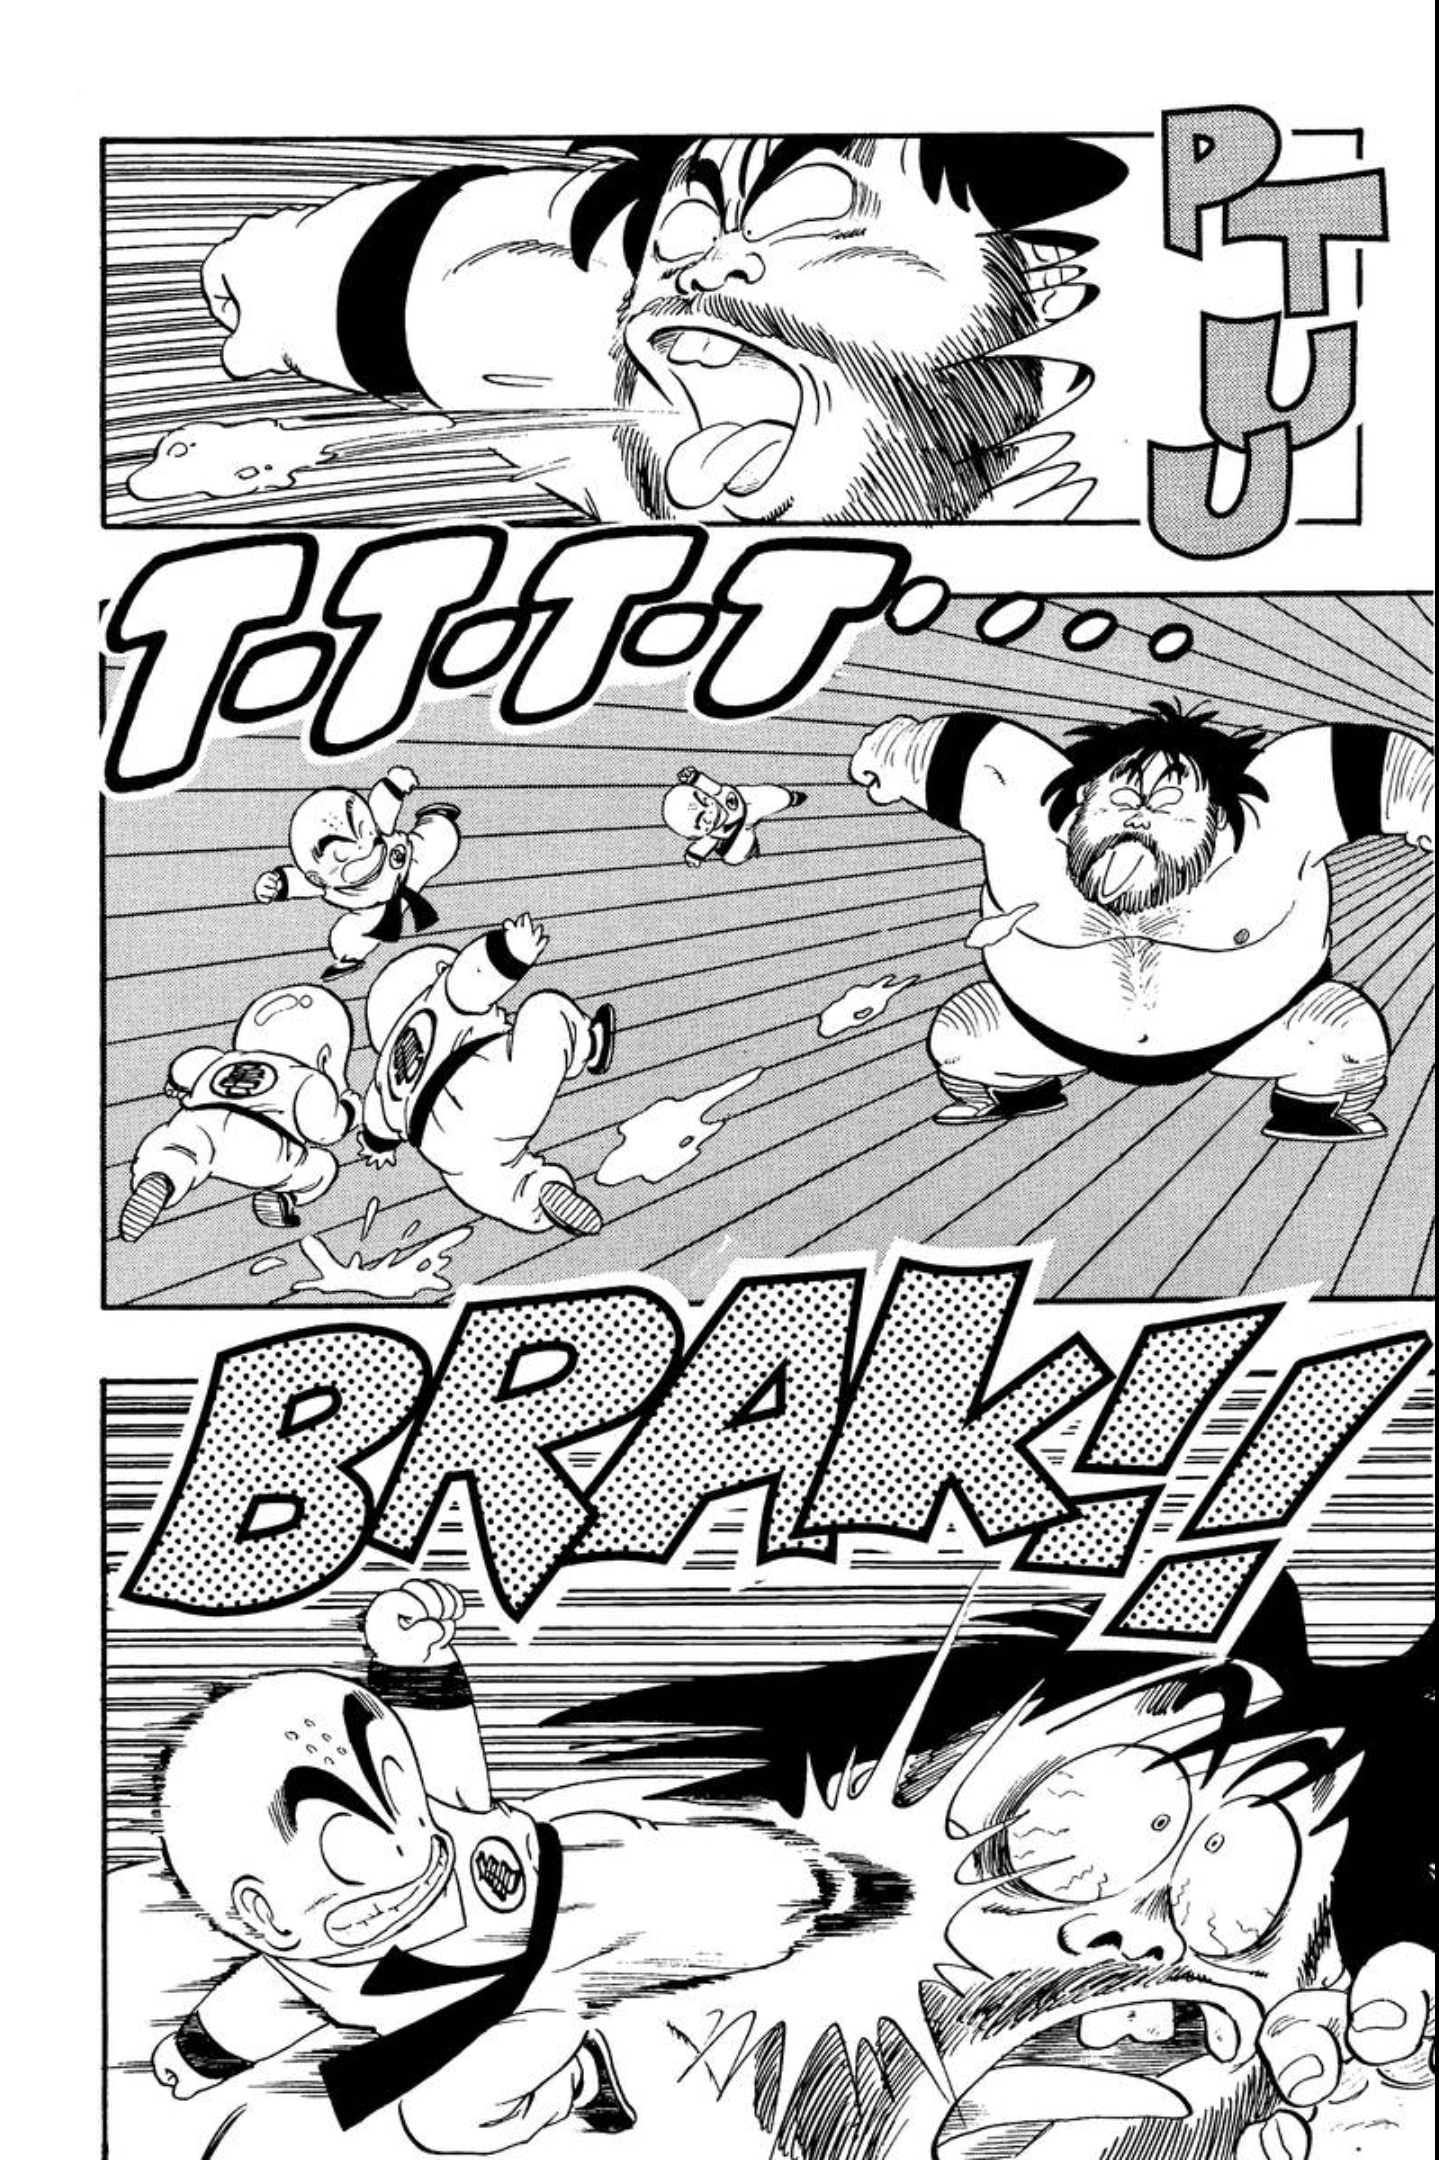 Kuririn narrowly avoids getting attacked during the Budokai tournament.